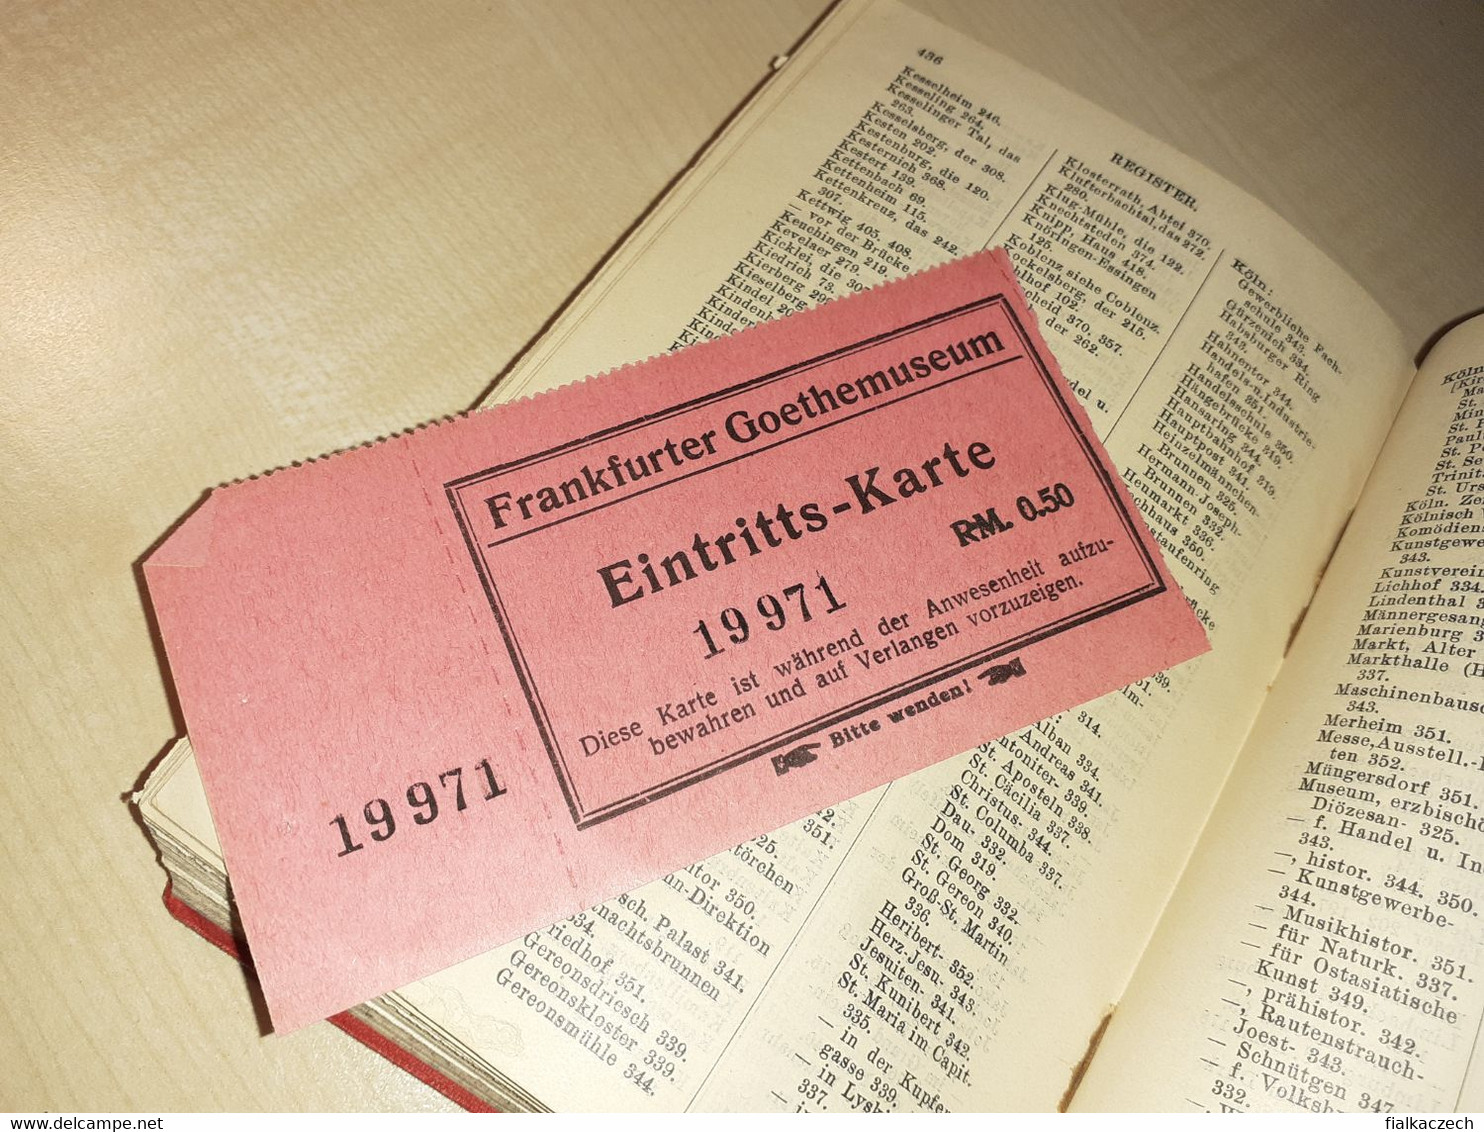 Baedekers, Rheinlande tour guide, 1925, von Elsässischen zur Holländischen Grenze + Ticket to Frankfurter Goethemuseum